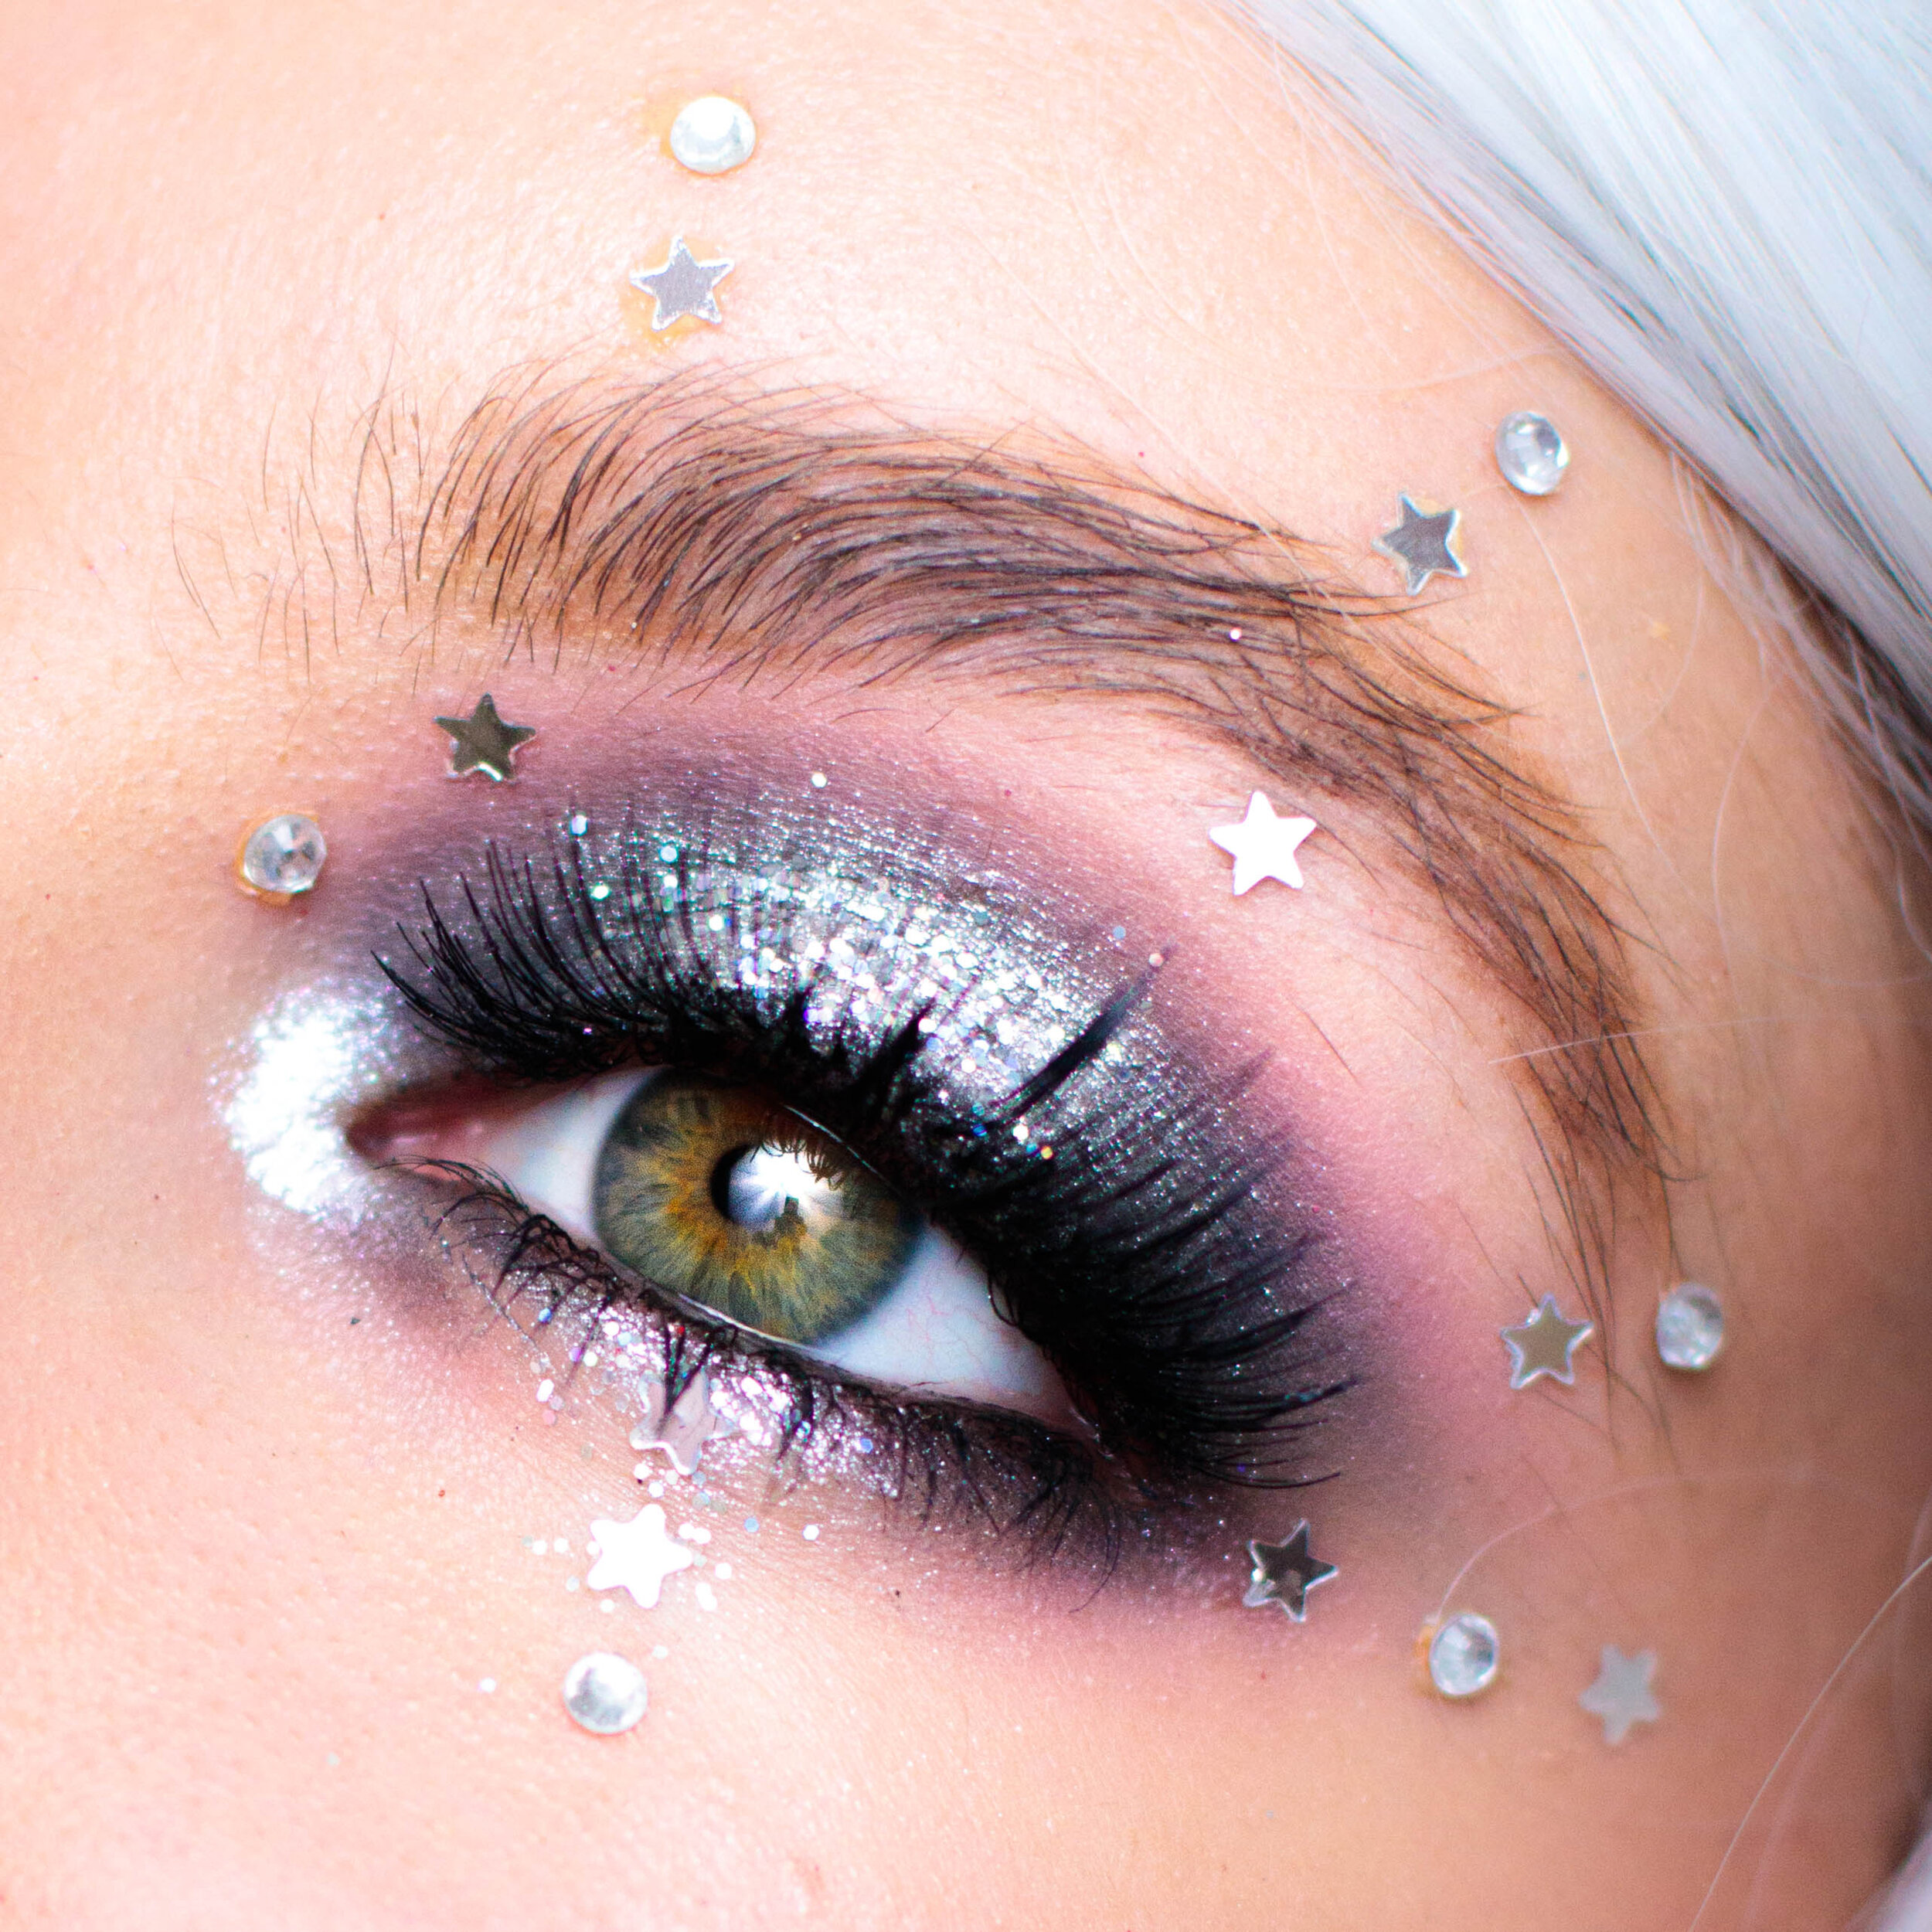 La Reine des neiges 2: le makeup ! — Pauuulette - Blog Makeup